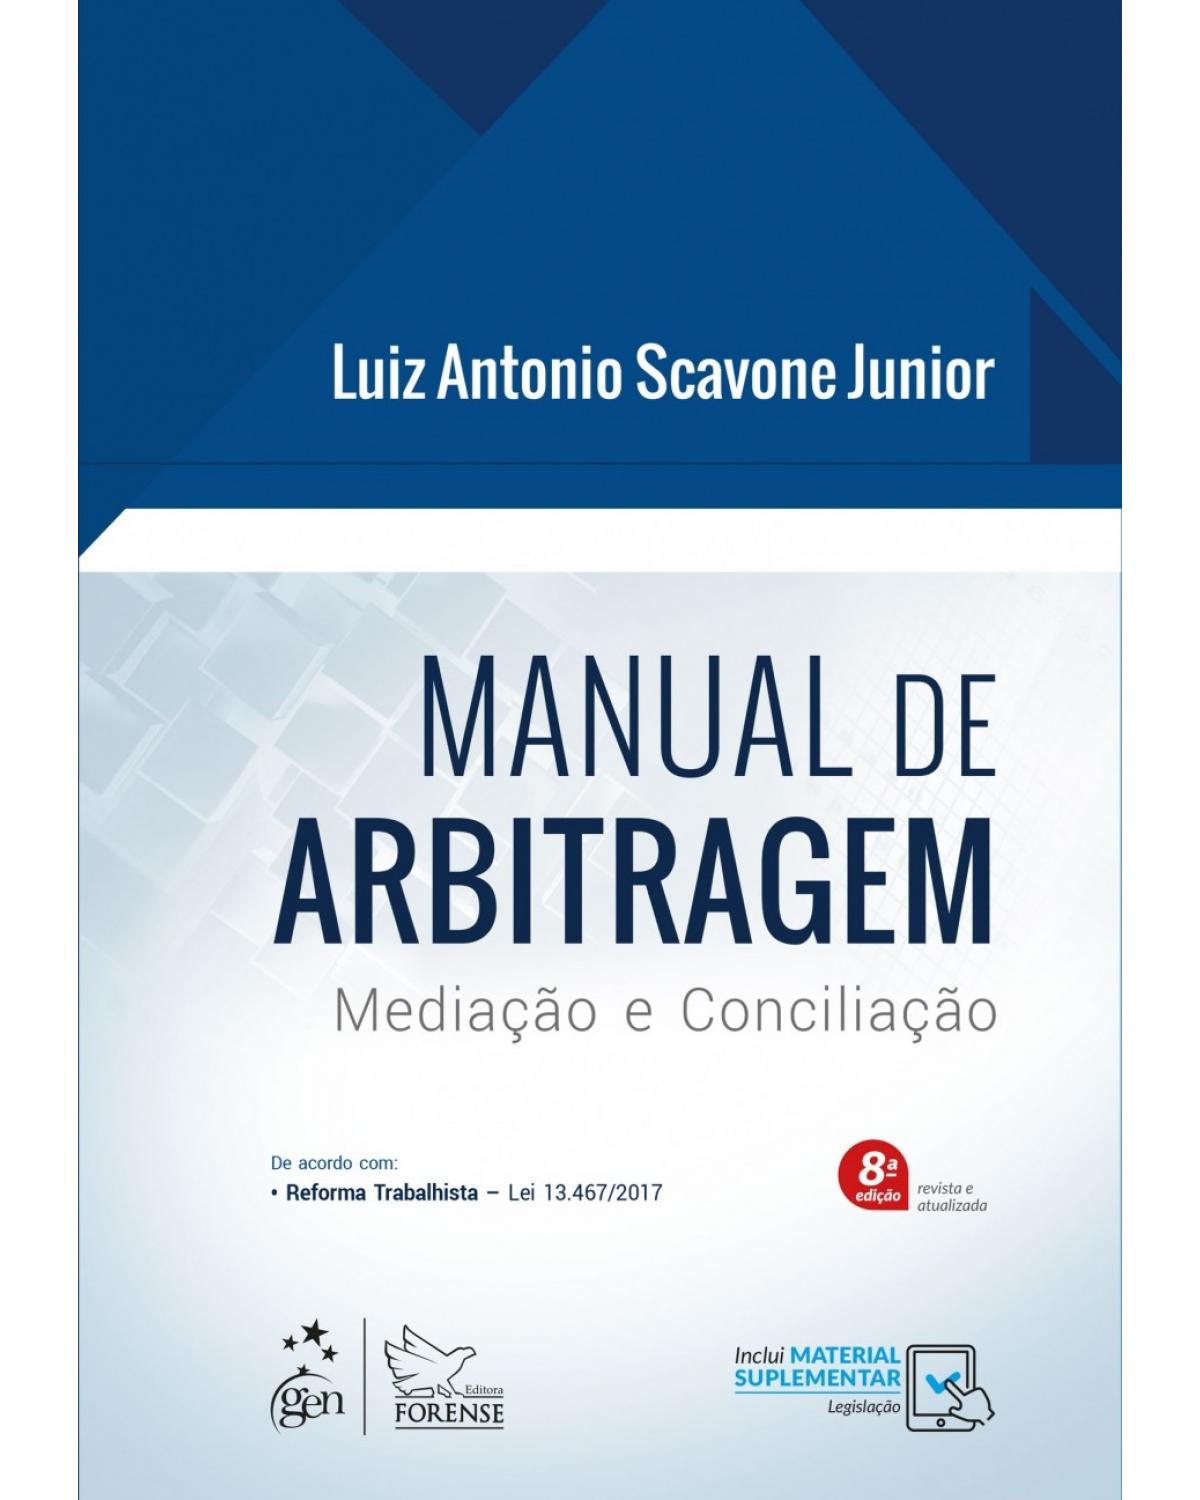 Manual de arbitragem - mediação e conciliação - 8ª Edição | 2018